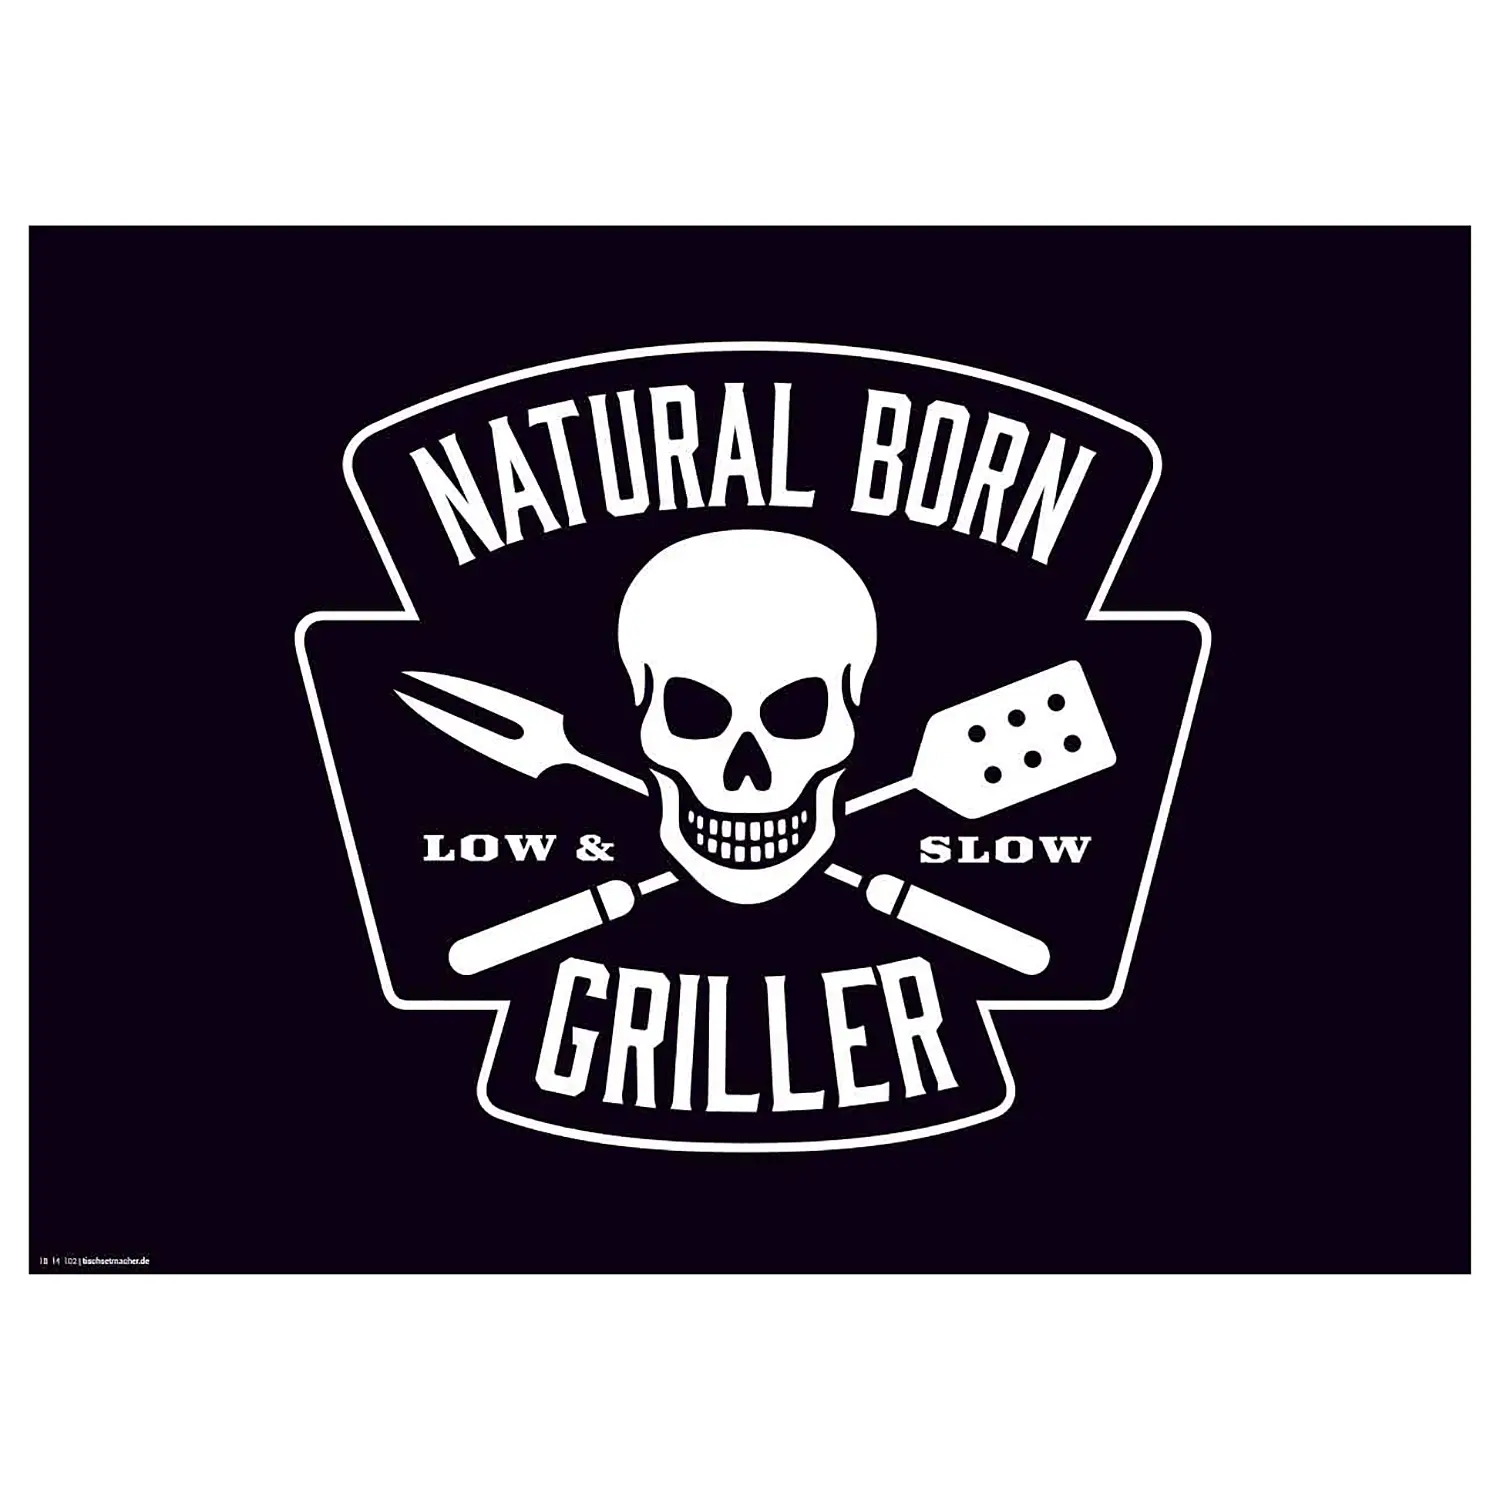 Tischset Natural Born Griller (12er-Set)